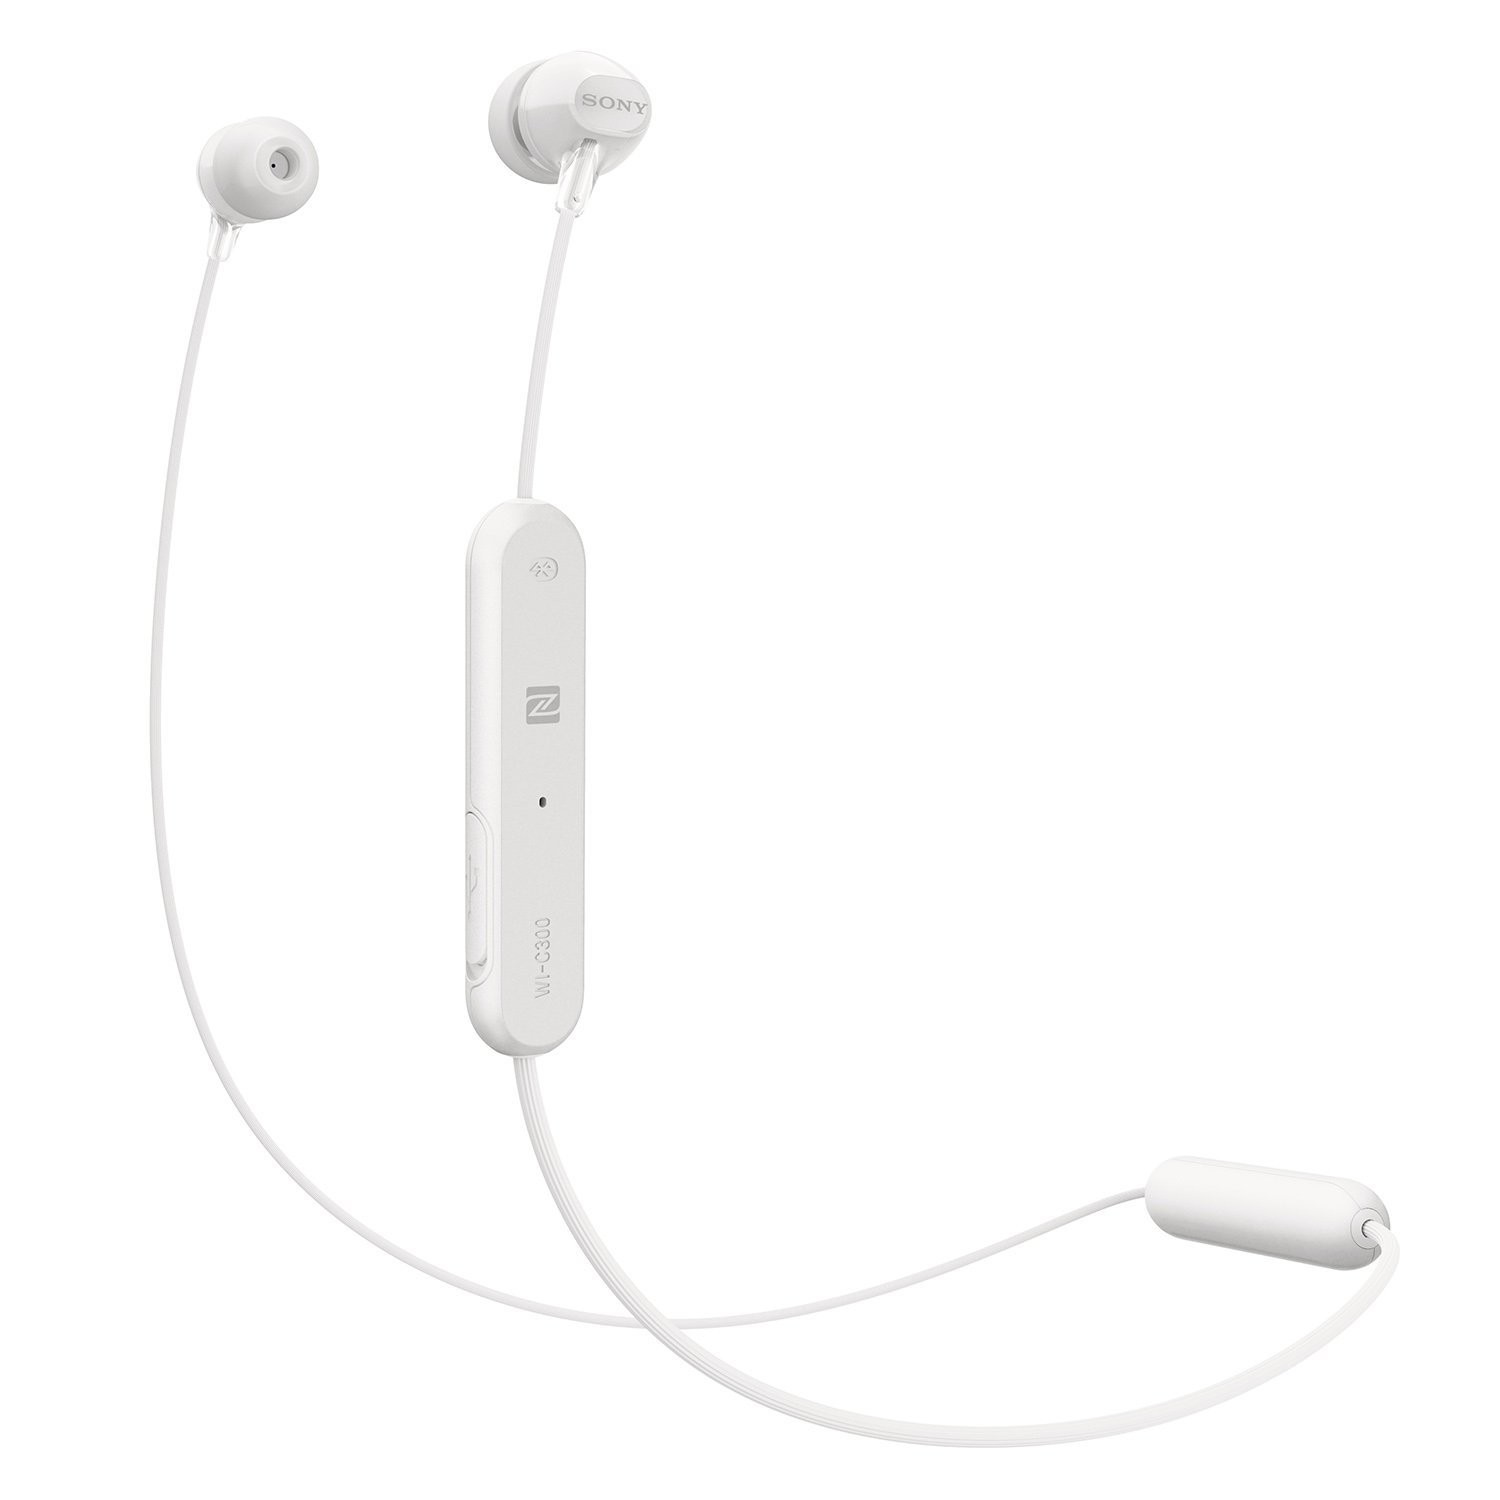 Sony WI-C300 Wireless in-Ear Headphones, White